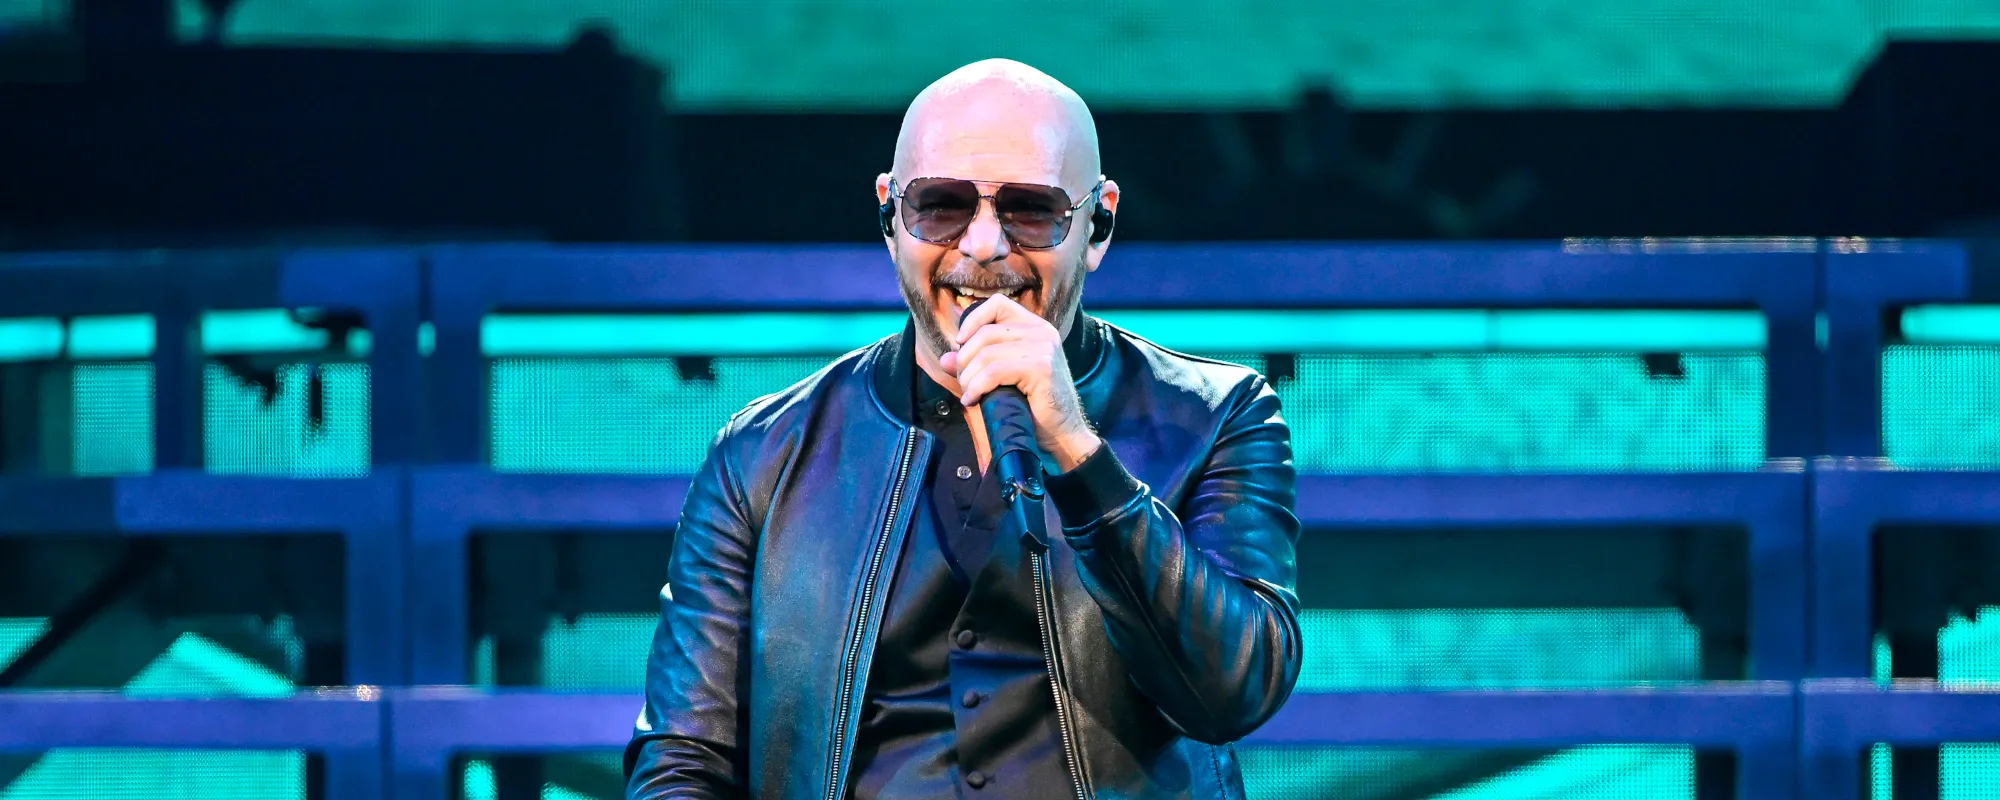 Pitbull, Enrique Iglesias, Ricky Martin to Embark on Trilogy Tour